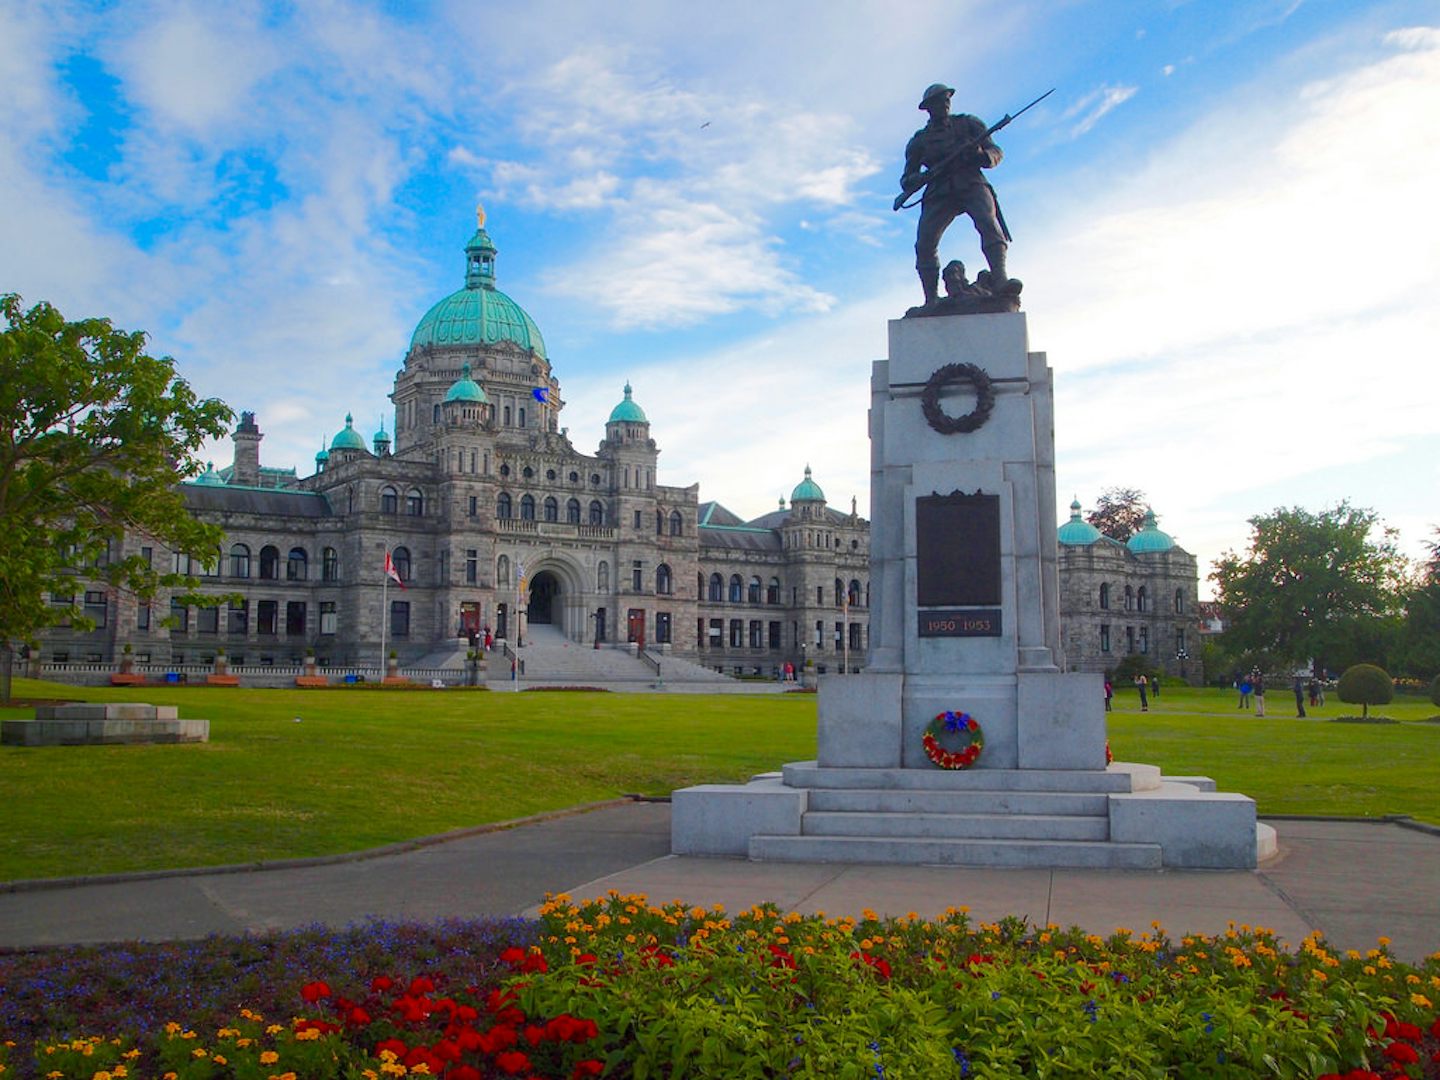 Victoria, BC: British Columbia Parliament buildings